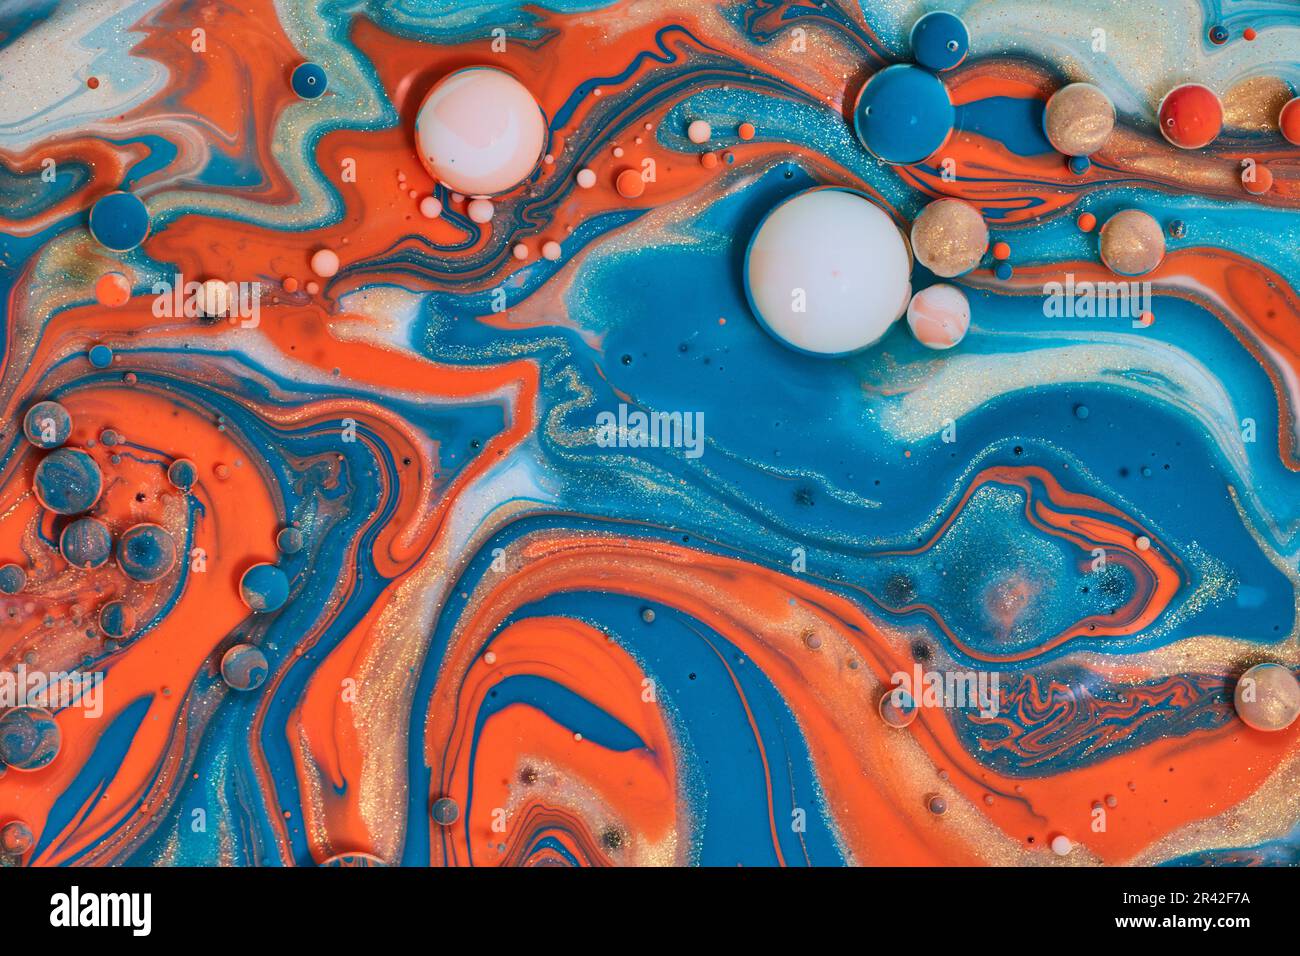 Pittura astratta con colori acrilici di arancio blu bianco e oro creando bolle d'olio e sfere in una risorsa di sfondo vorticoso Foto Stock